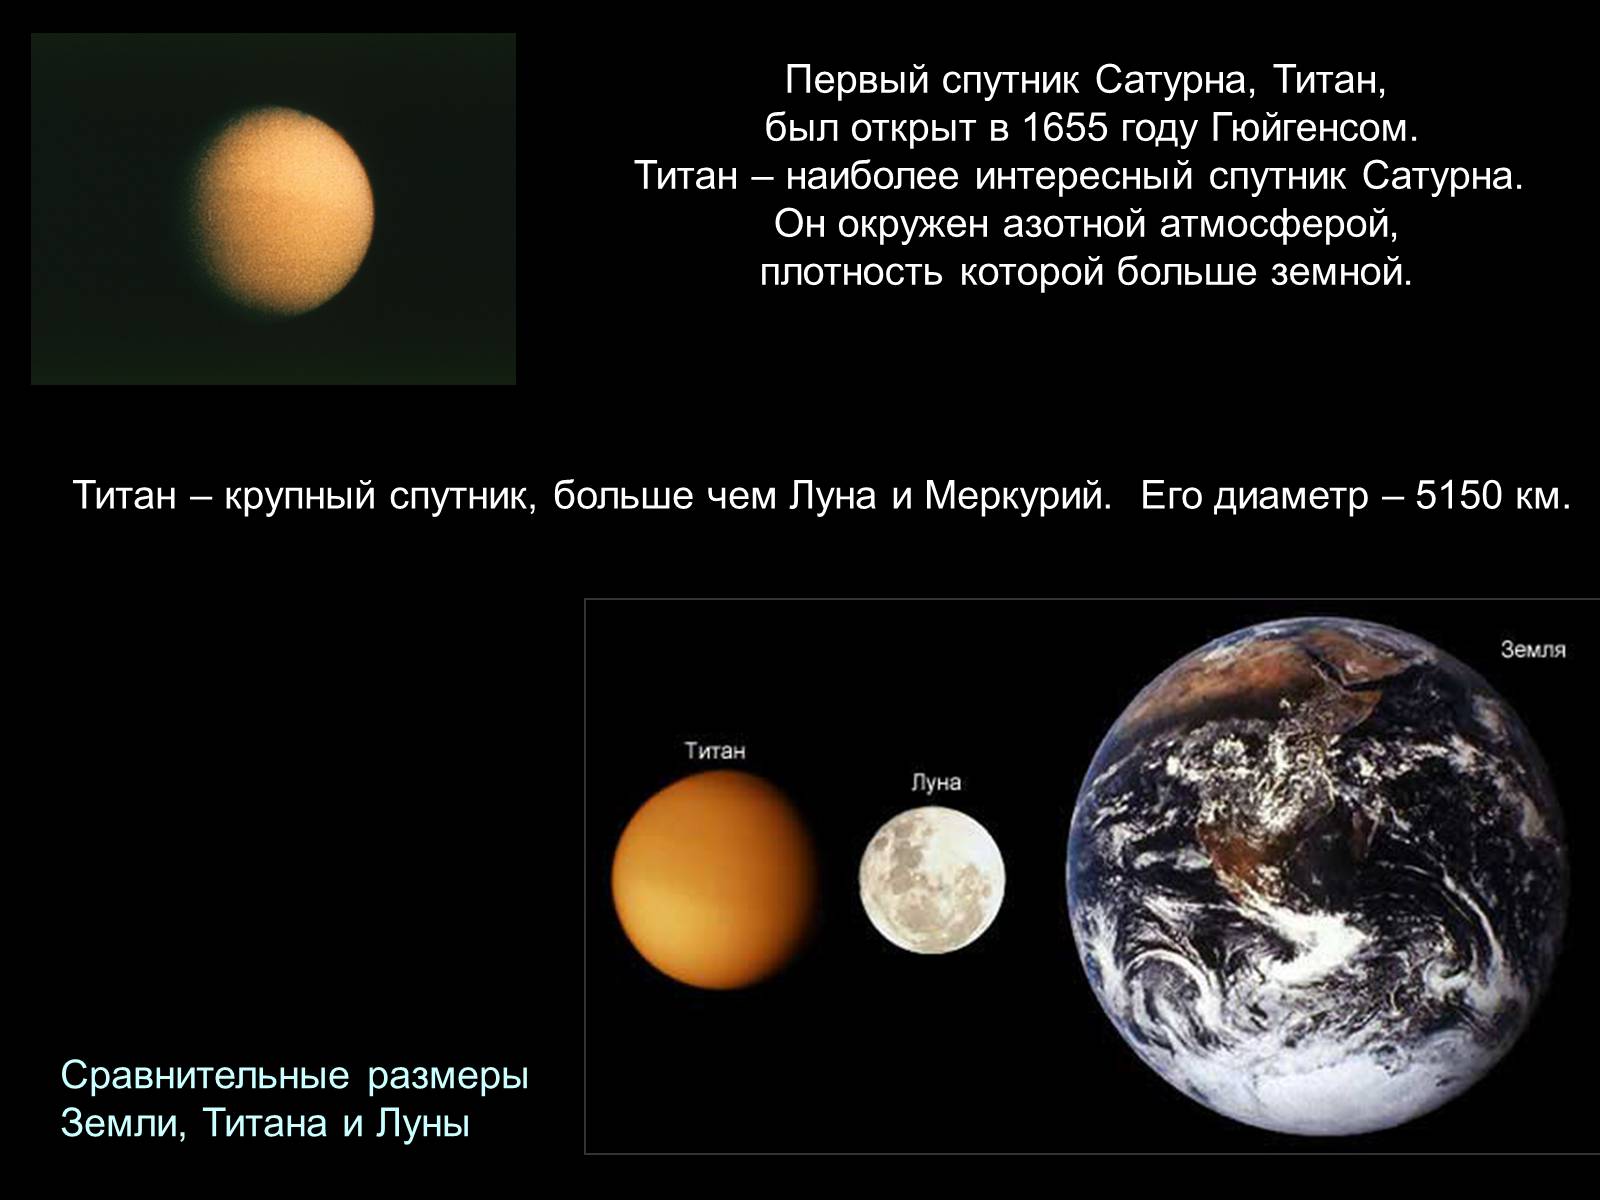 Спутник плотной атмосферой. Титан Спутник. Титан Спутник спутники Сатурна. Спутник Титан Планета. Титан Спутник интересные факты.